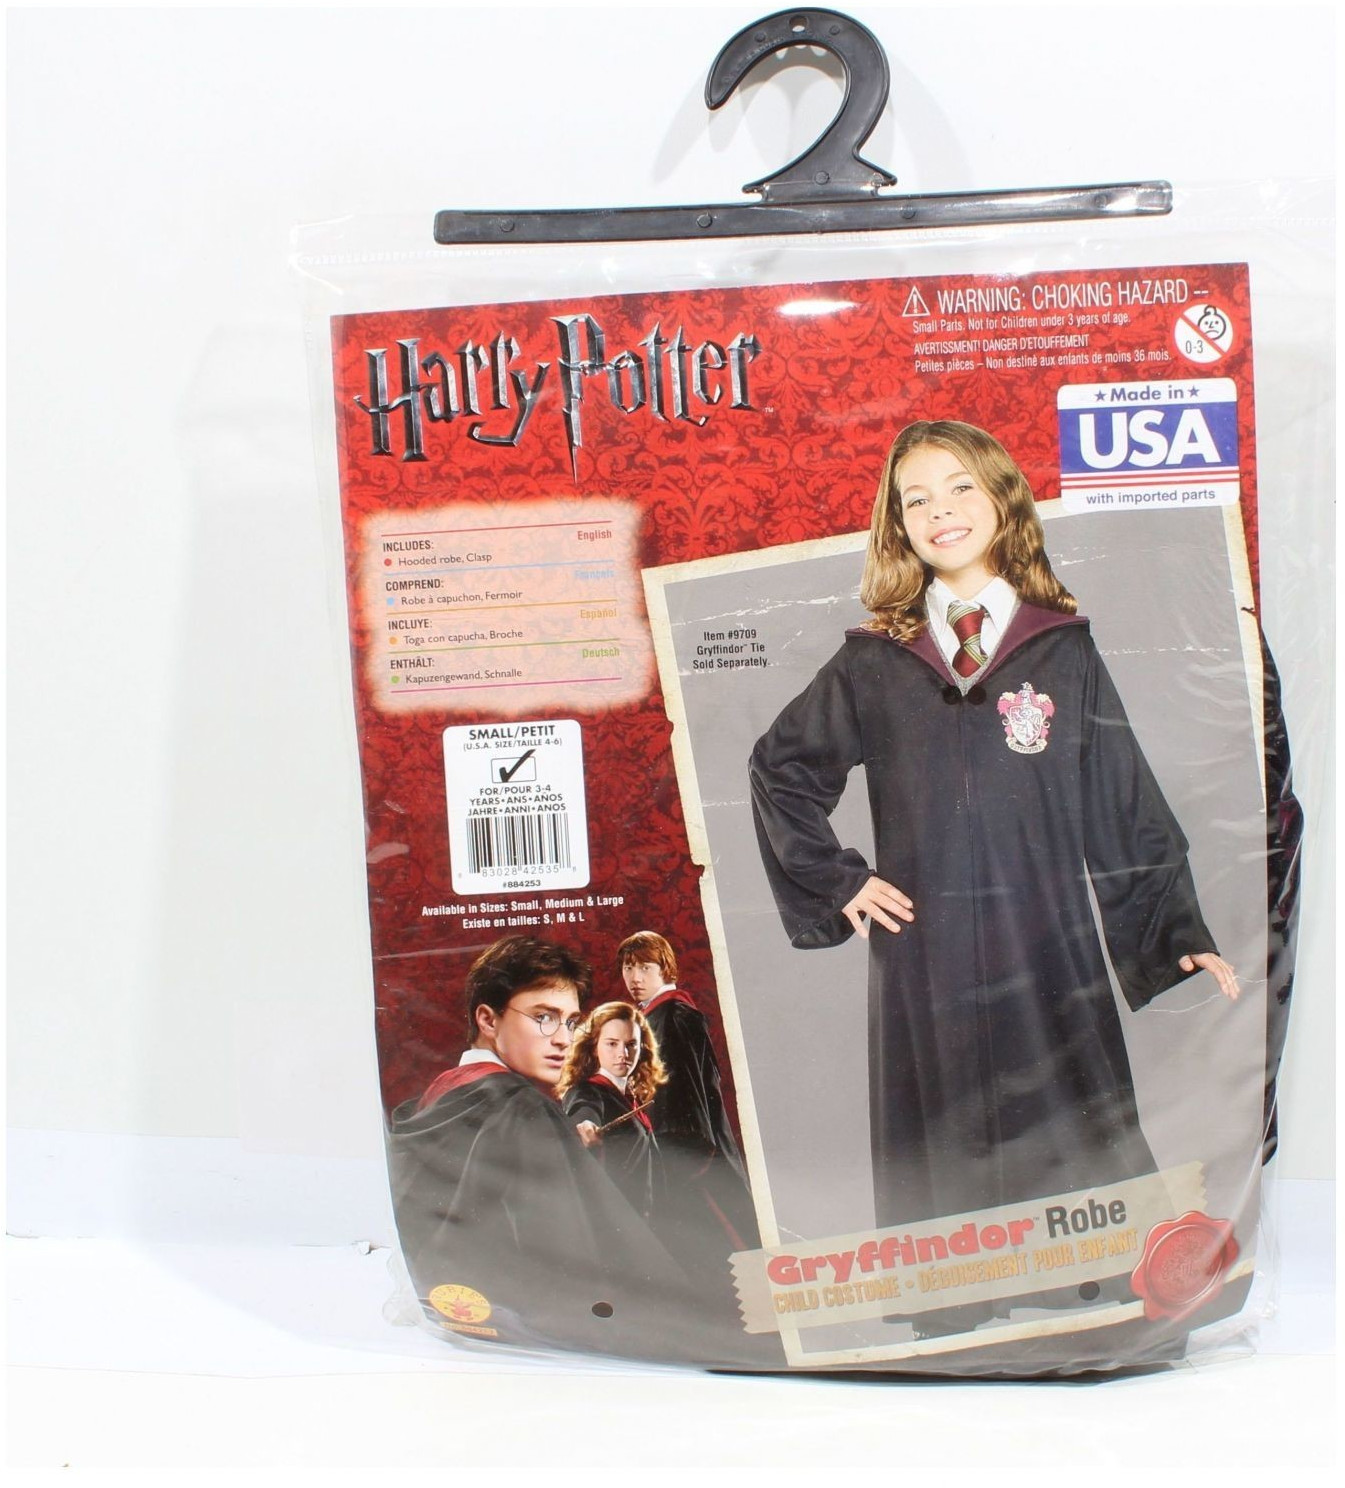 Vestito carnevale tunica Harry Potter - S (3-4 anni)